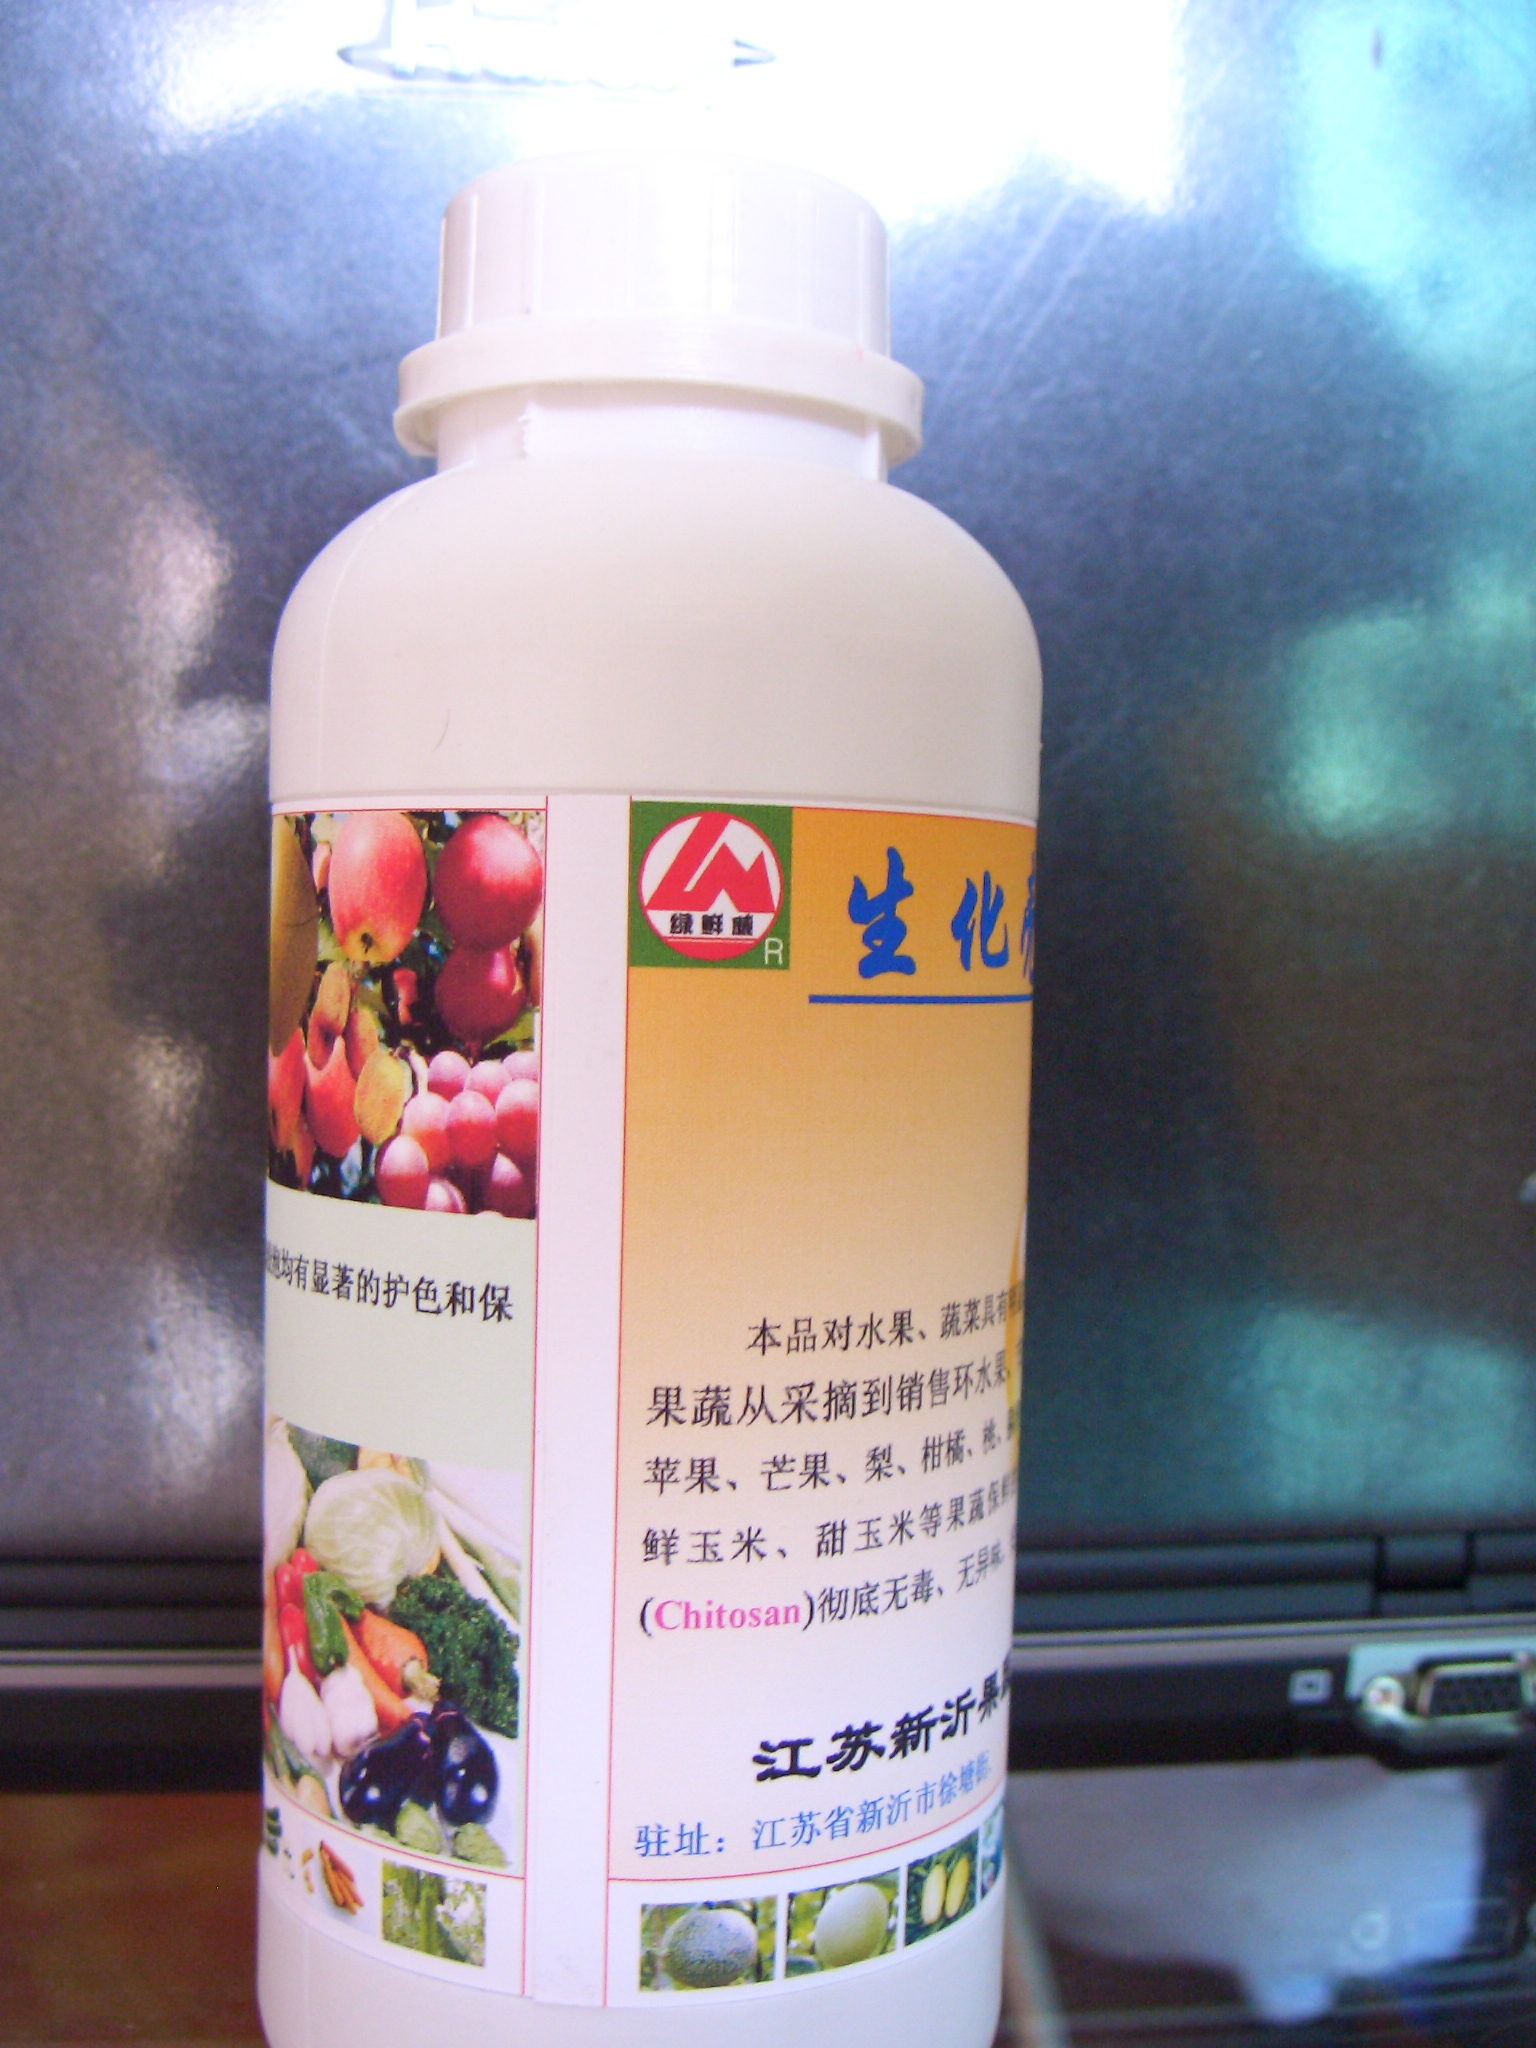 其他化肥 生化壳聚糖保鲜剂(Chitosan)1